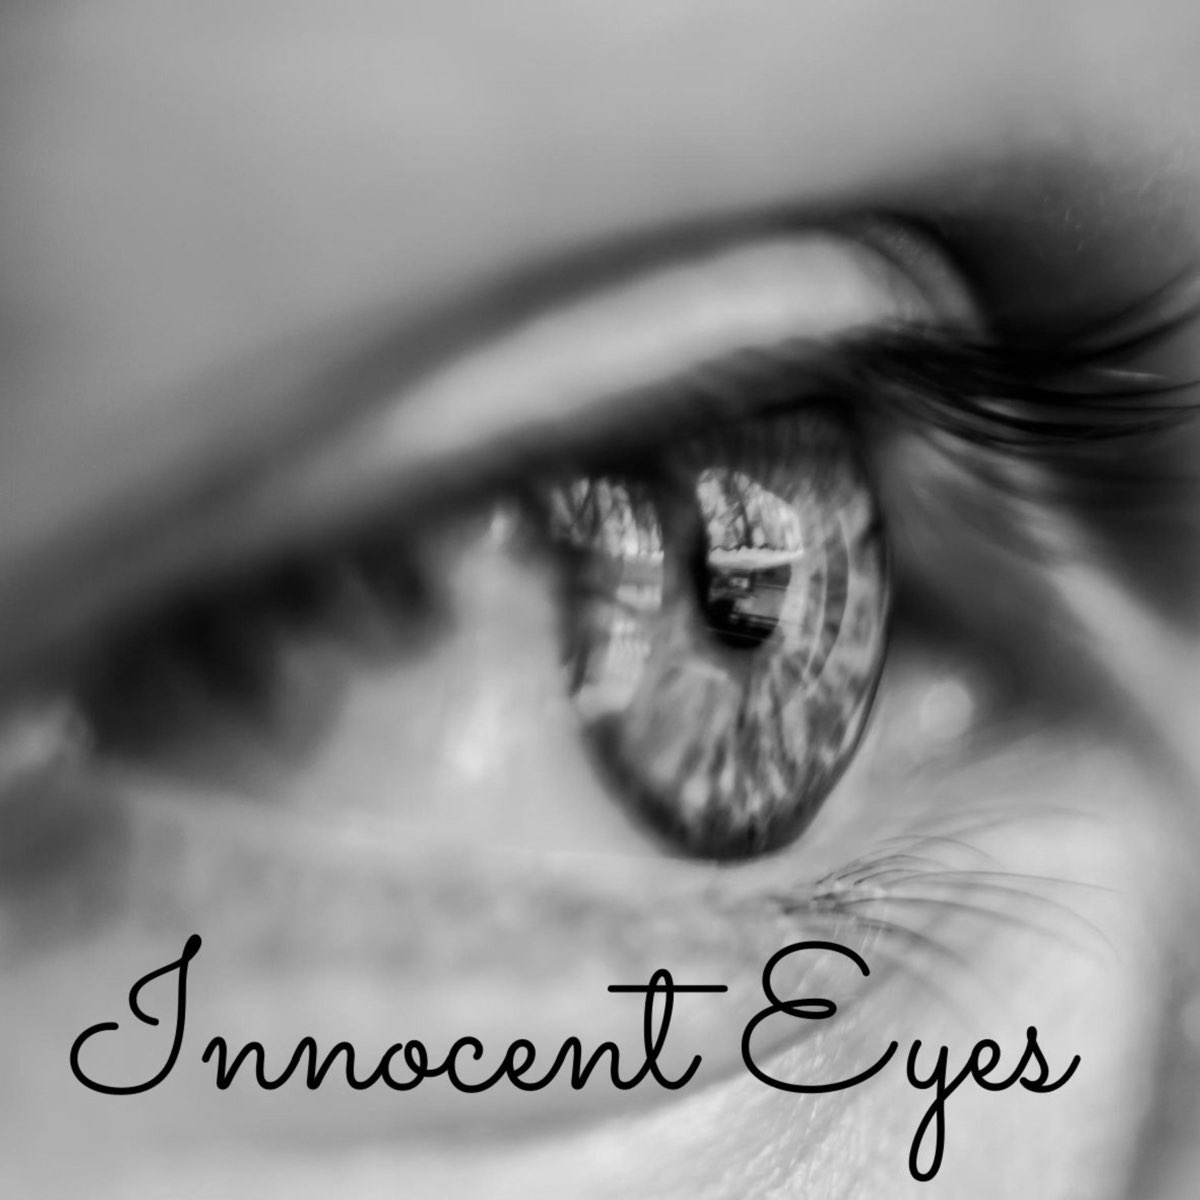 The innocent Eye. Eye scene